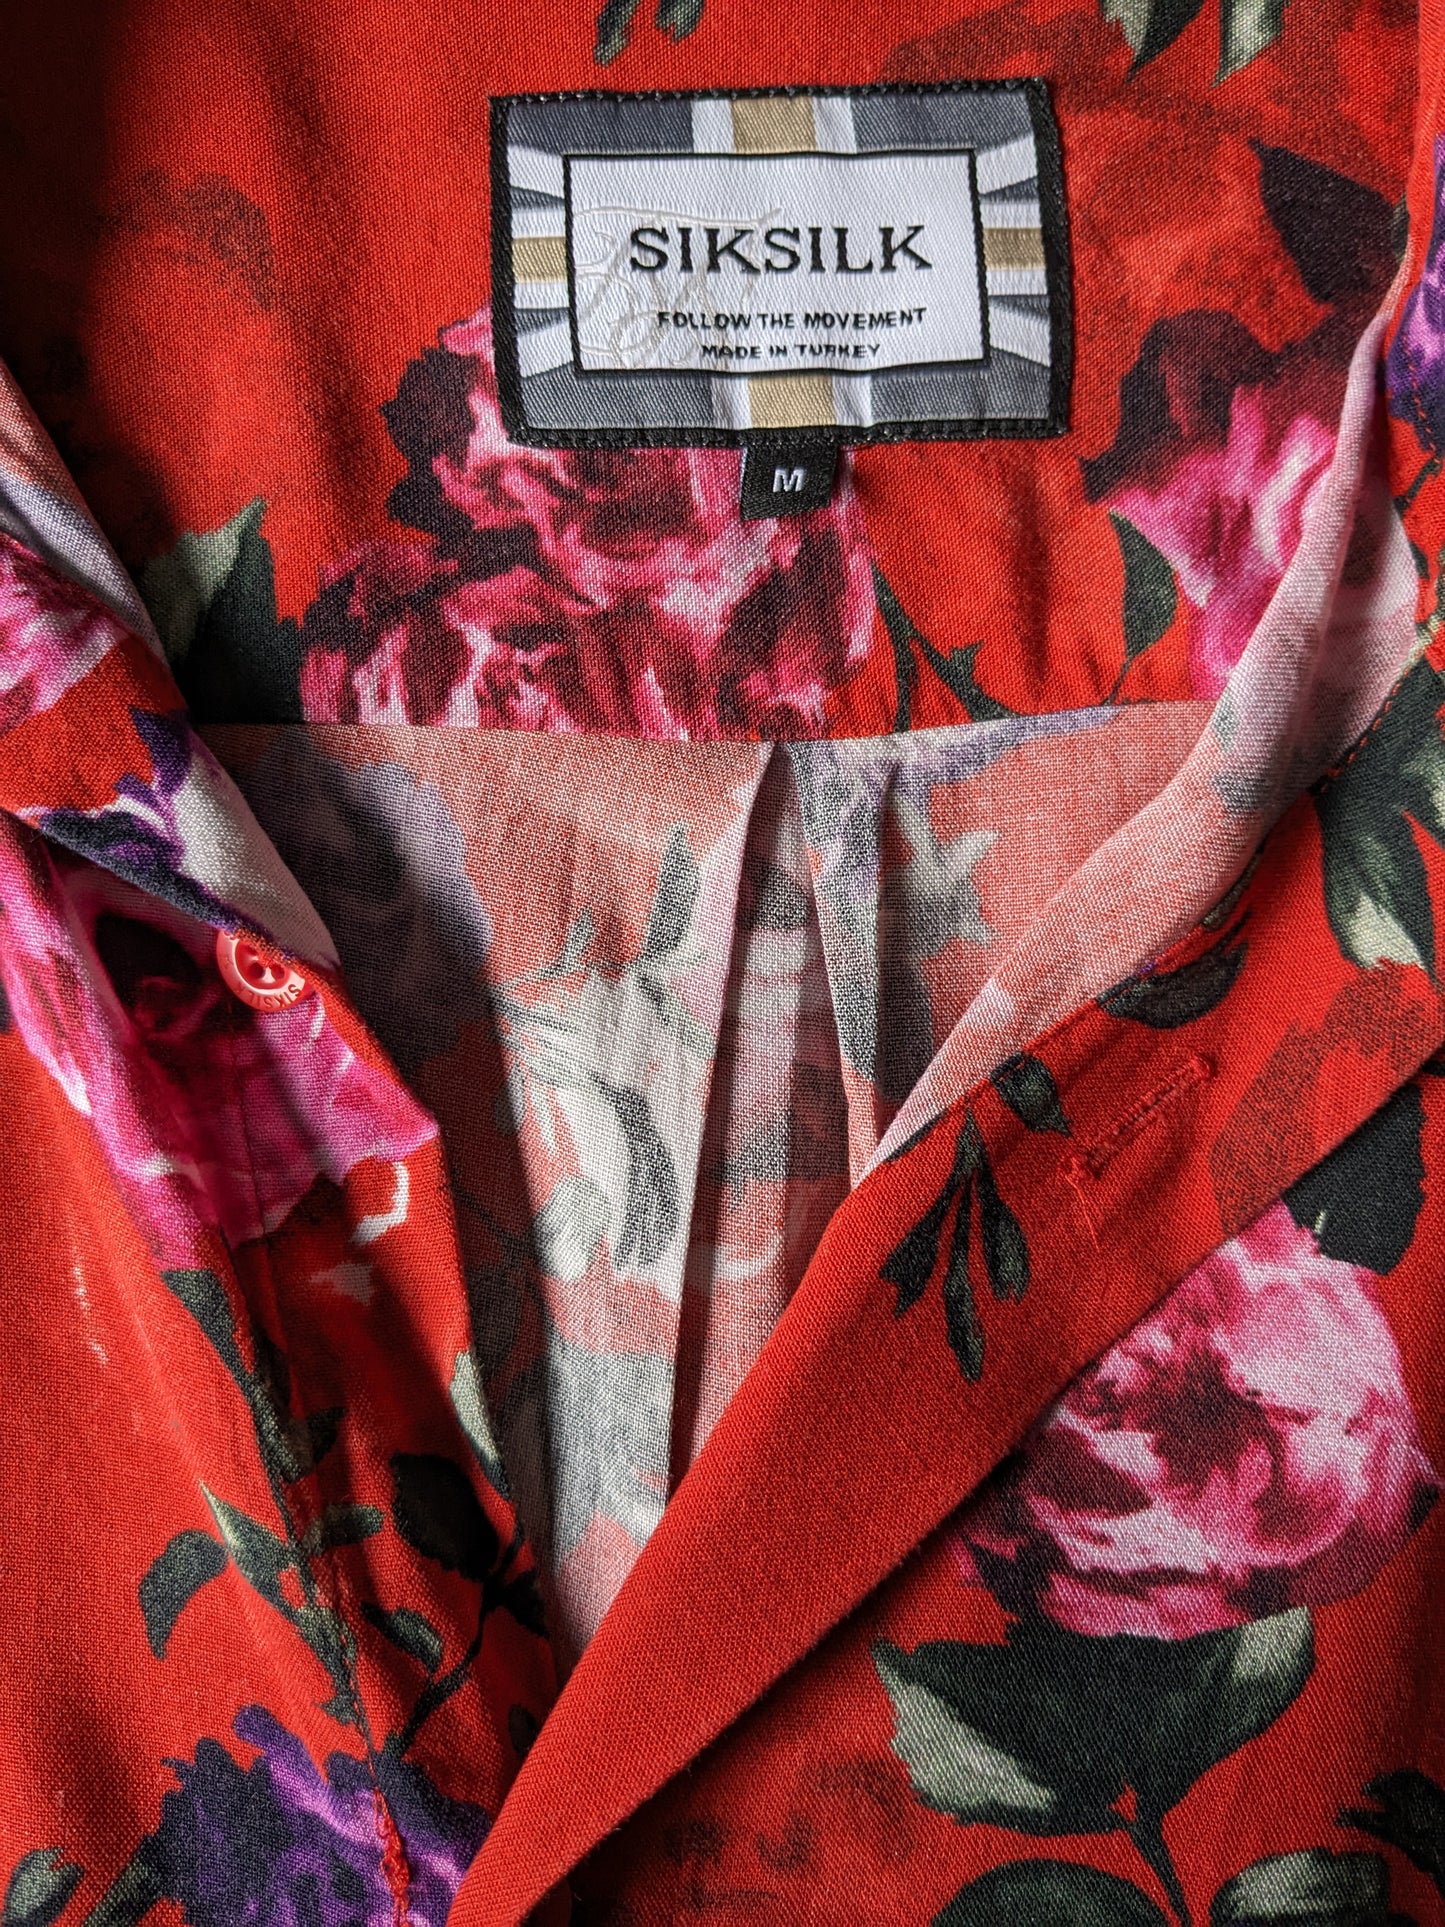 Siksilk overhemd korte mouw. Rood roze paarse bloemen print. Viscose. Maat M.